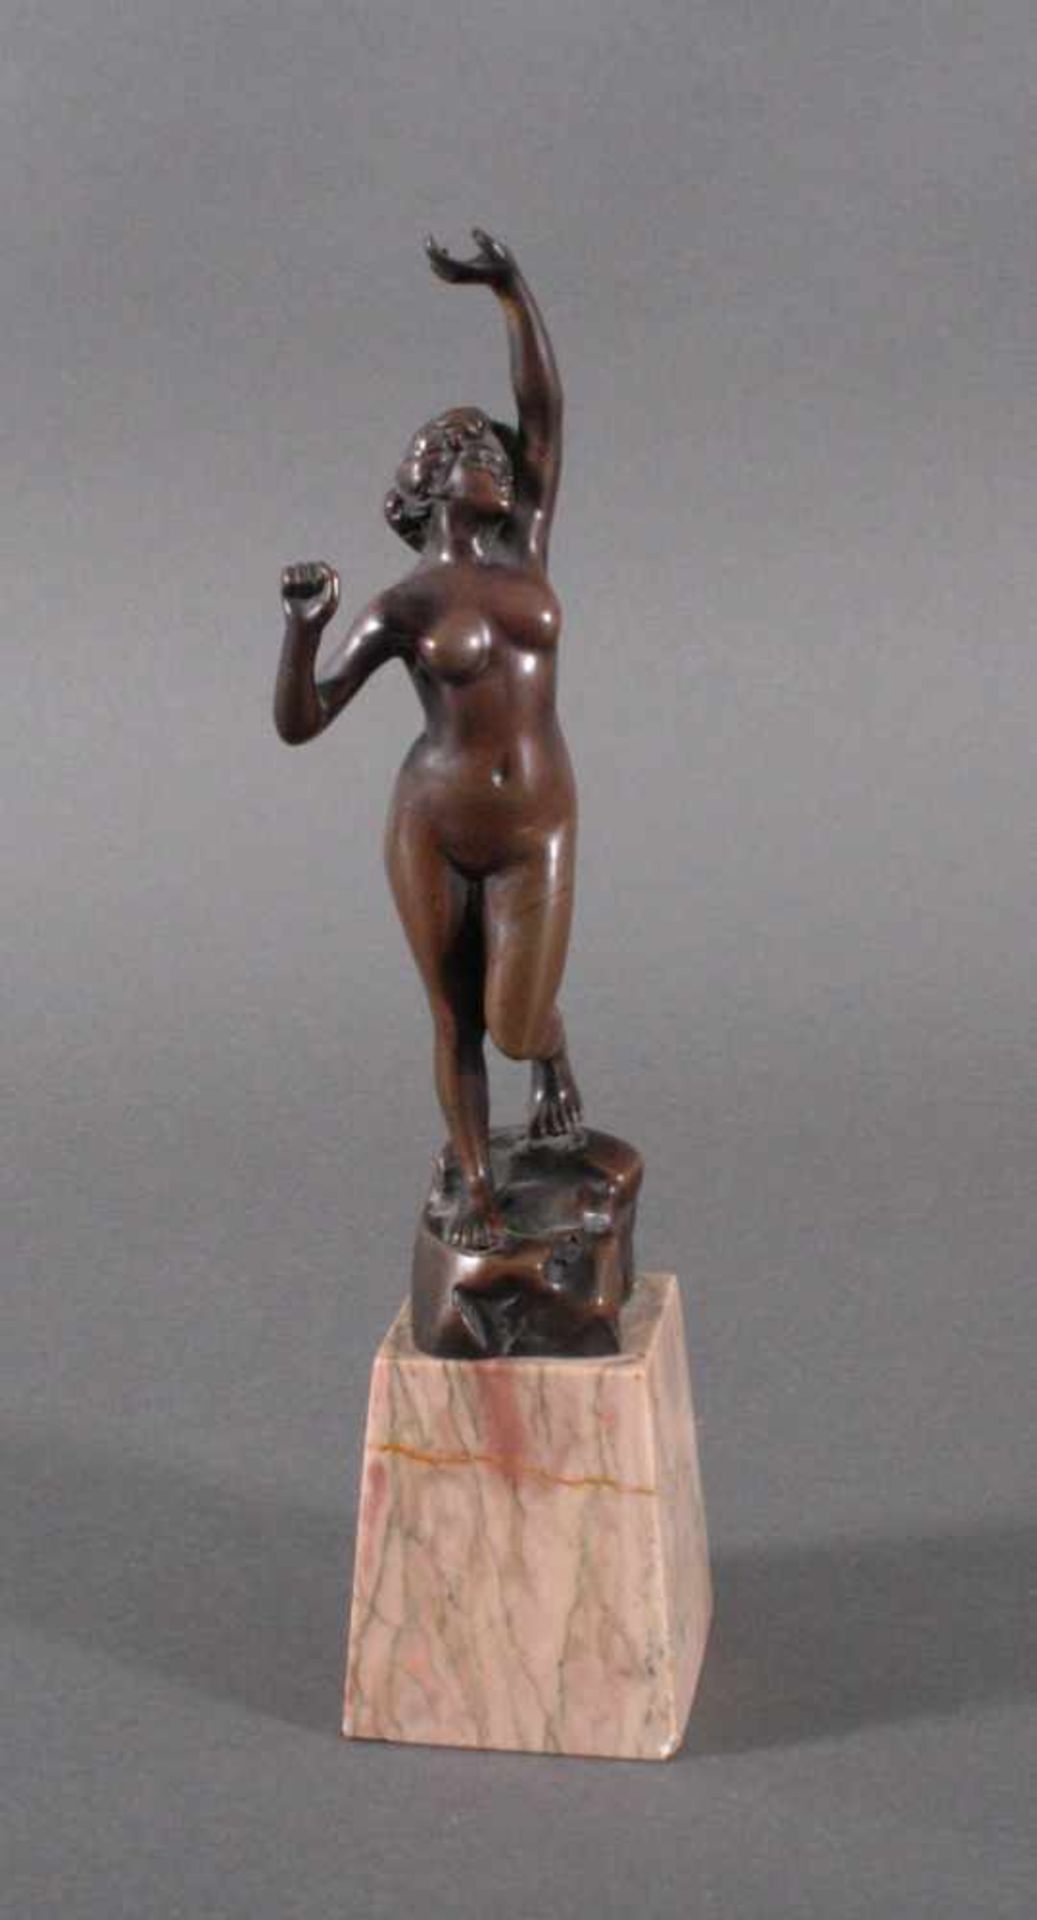 Jugendstil Bronzeskulptur "Weiblicher Akt"Vollplastische weibliche Figur, den linken Arm nach